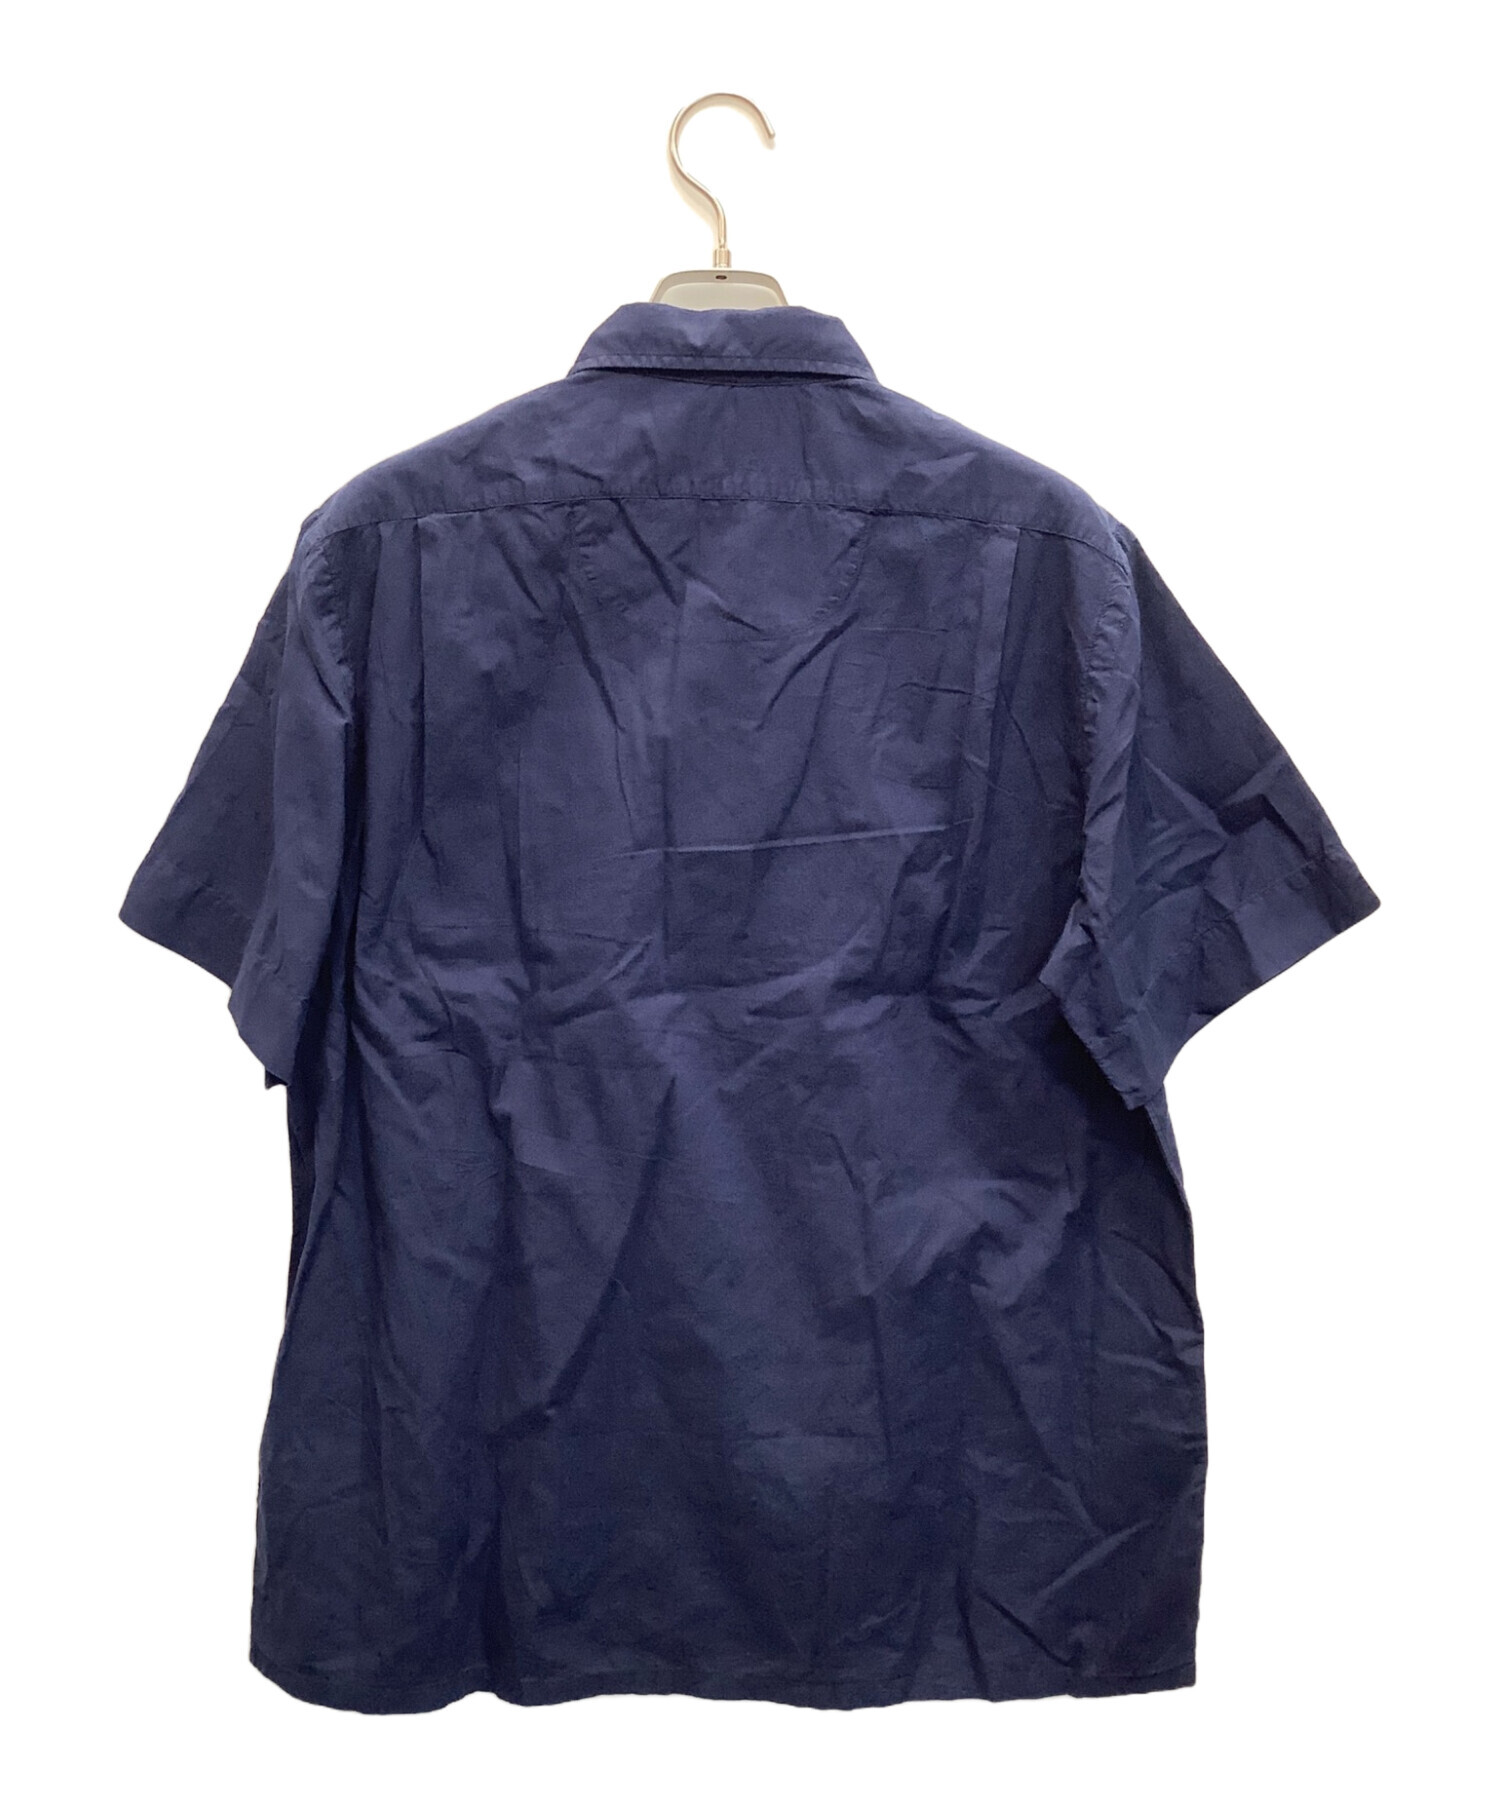 POLO RALPH LAUREN (ポロ・ラルフローレン) 半袖シャツ ネイビー サイズ:M 未使用品